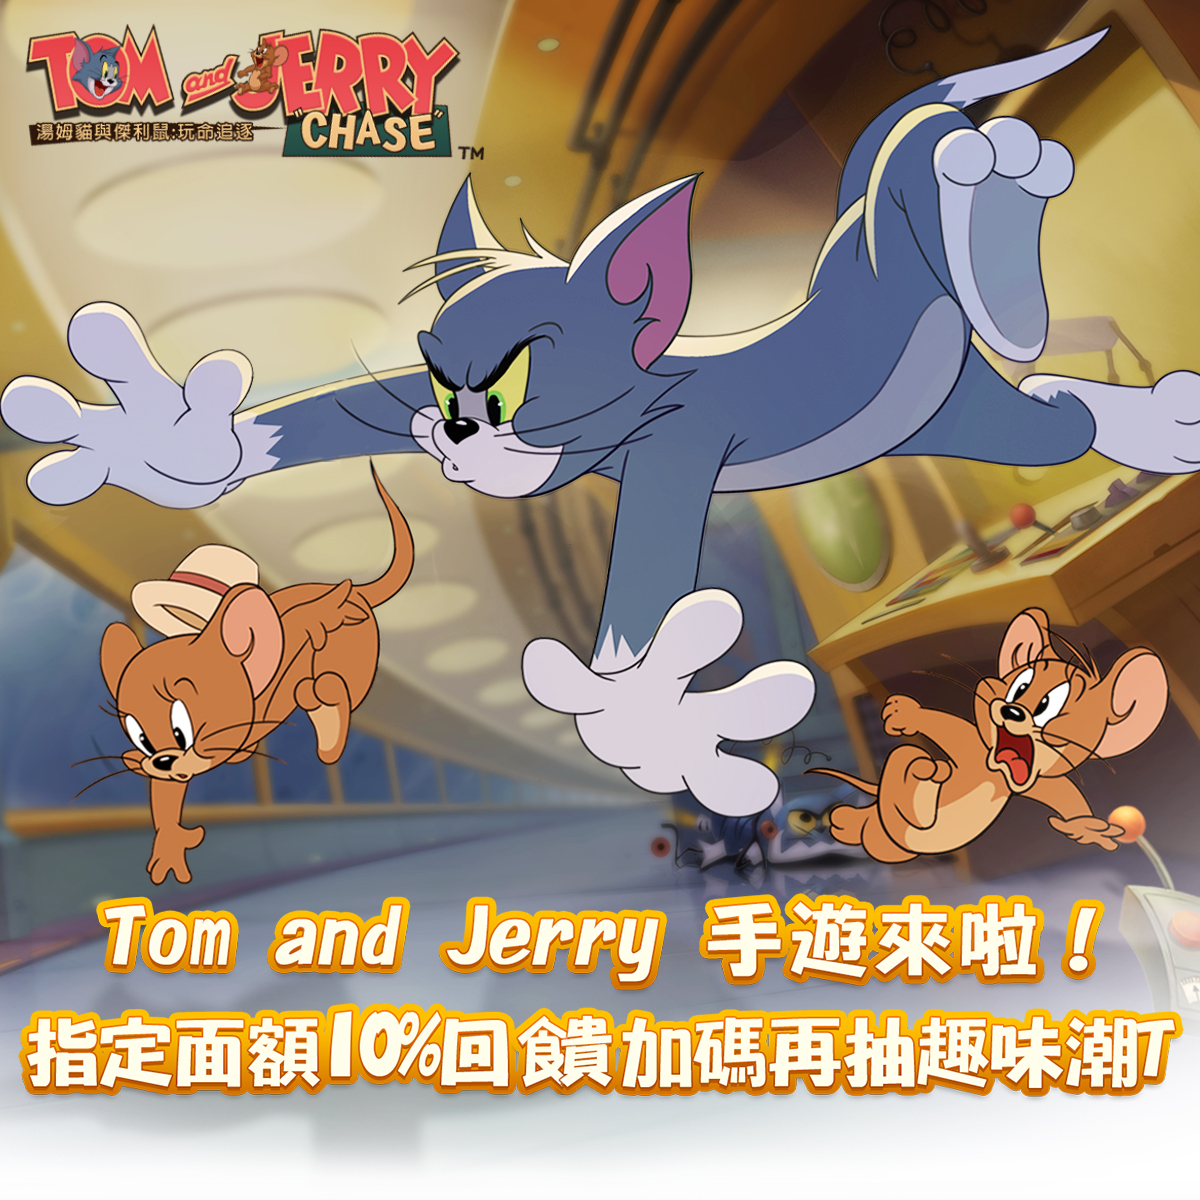   《湯姆貓與傑利鼠：玩命追逐》  ｜中華電信